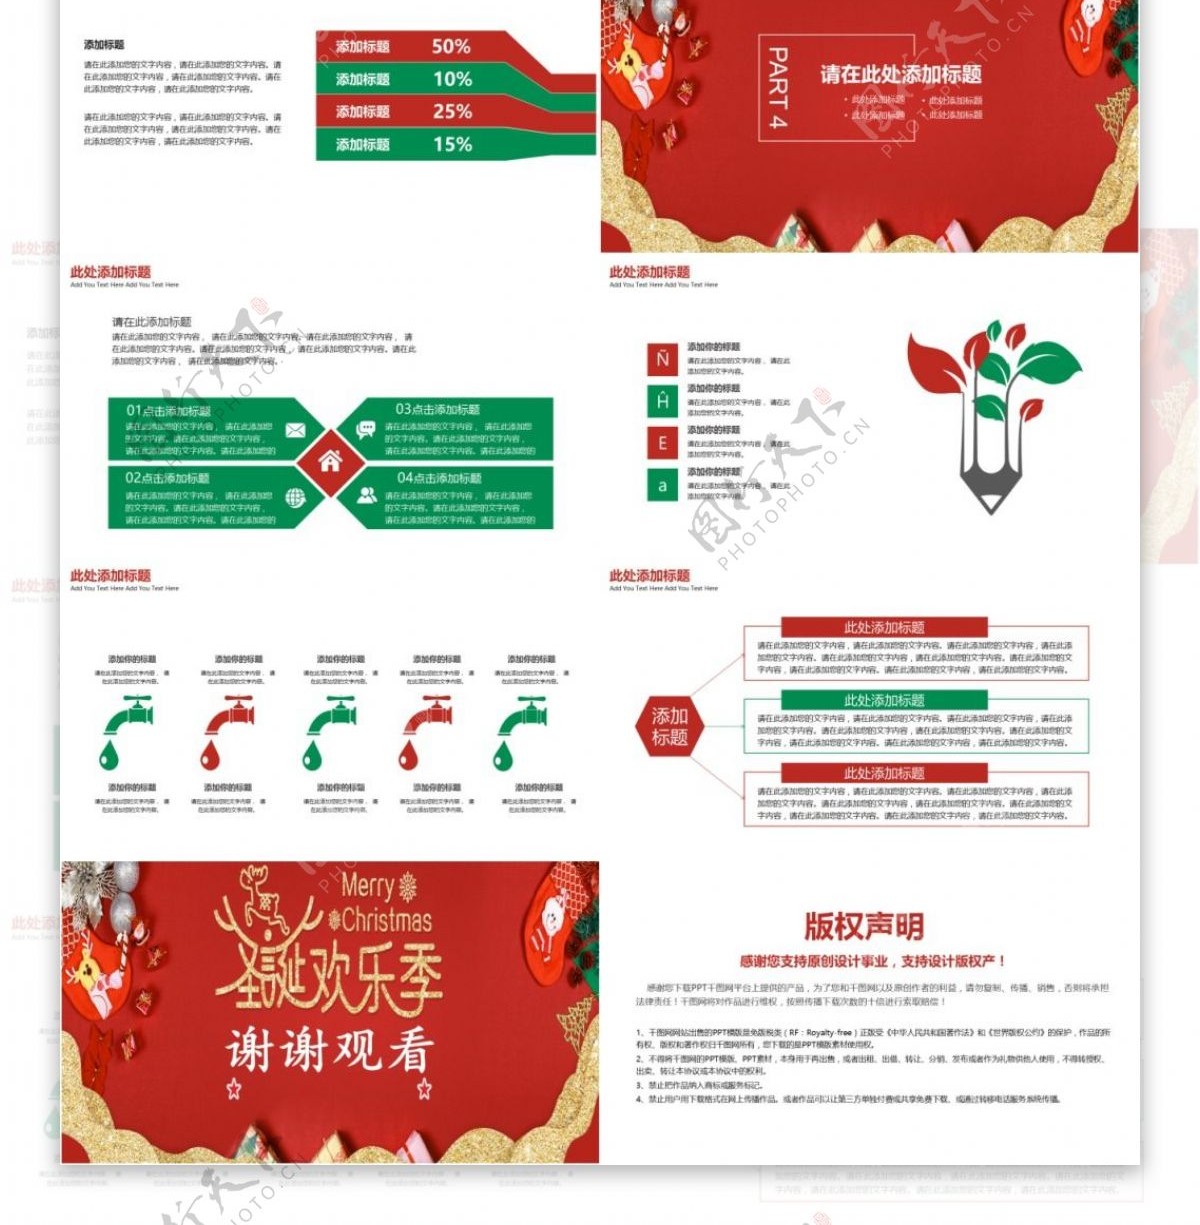 红绿圣诞活动策划宣传PPT模板